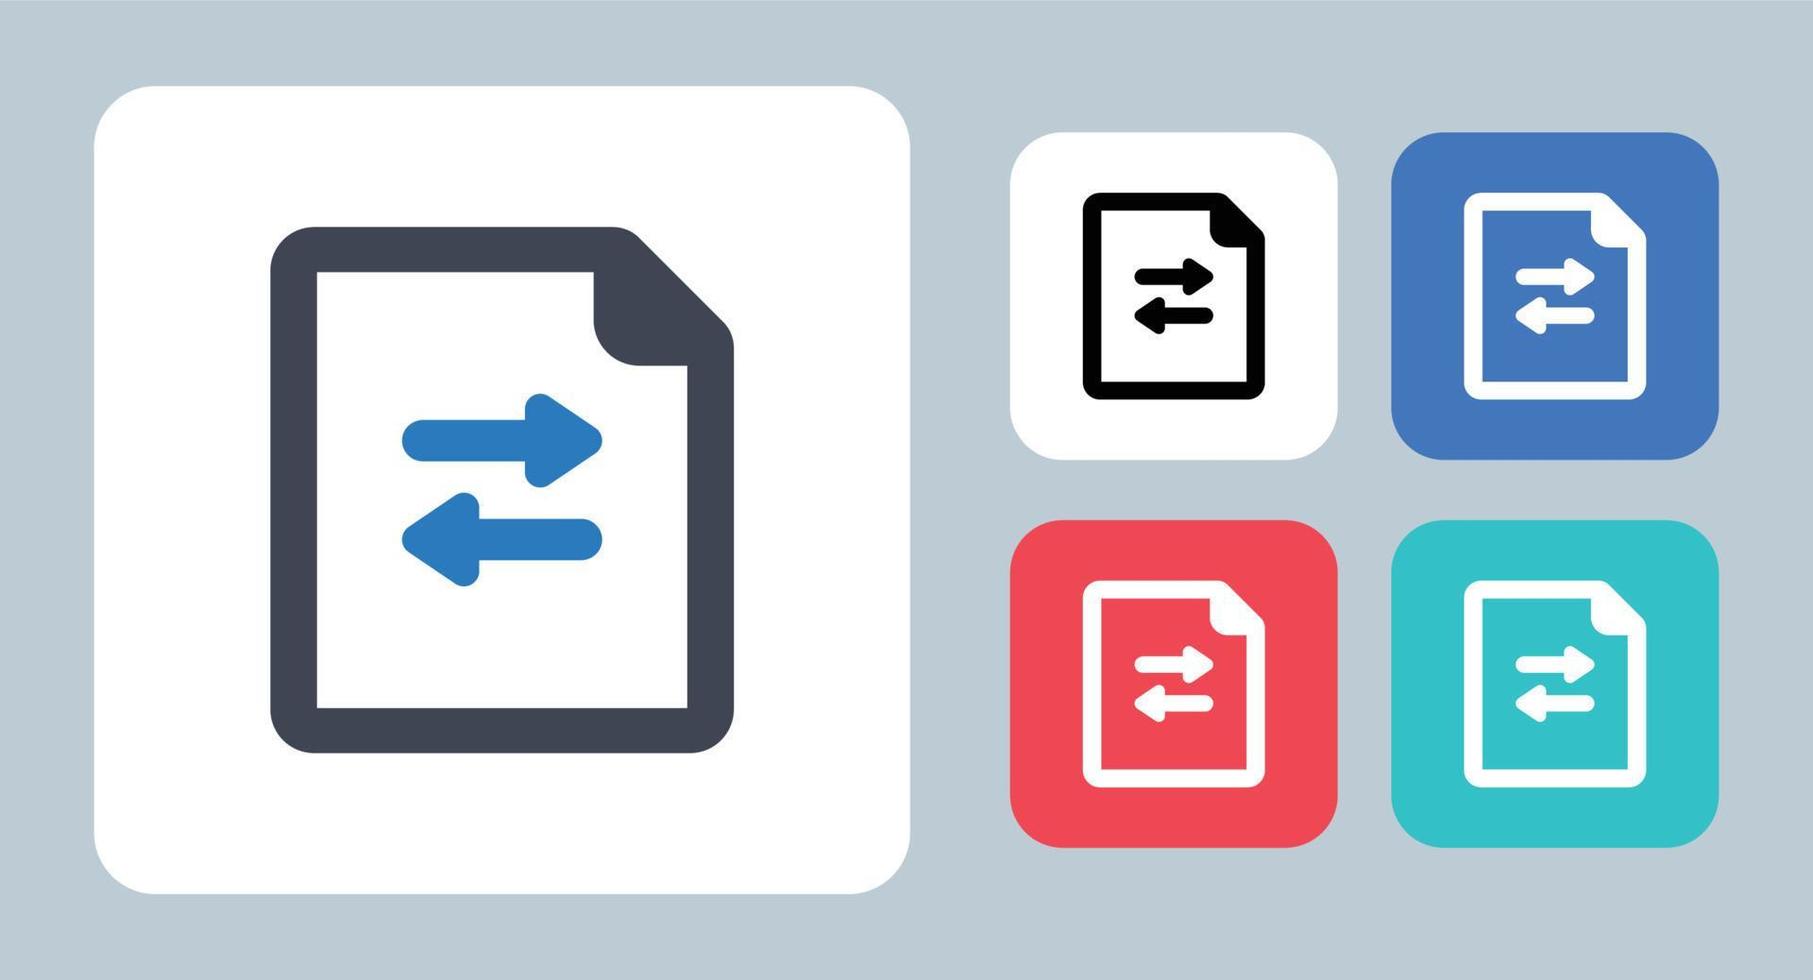 filöverföring ikon - vektor illustration. fil, dokument, överför, skicka, flytta, data, sida, delning, dela, papper, ark, linje, kontur, platt, ikoner.